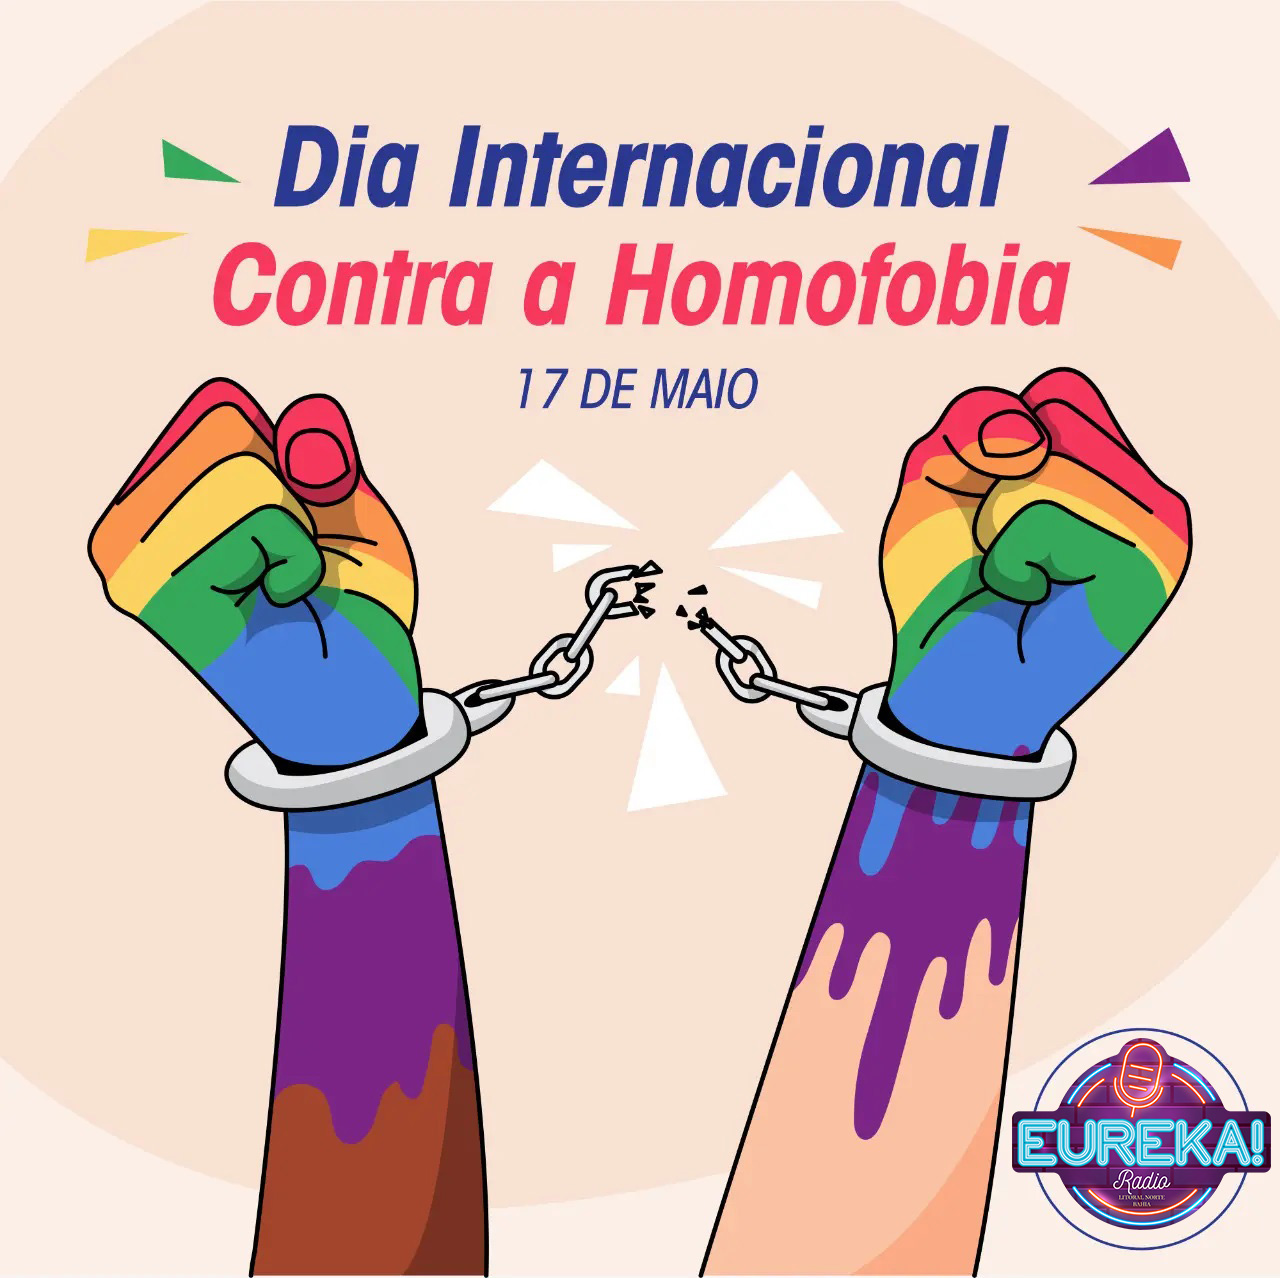 17 de maio : Dia Internacional contra a Homofobia, Transfobia e Bifobia